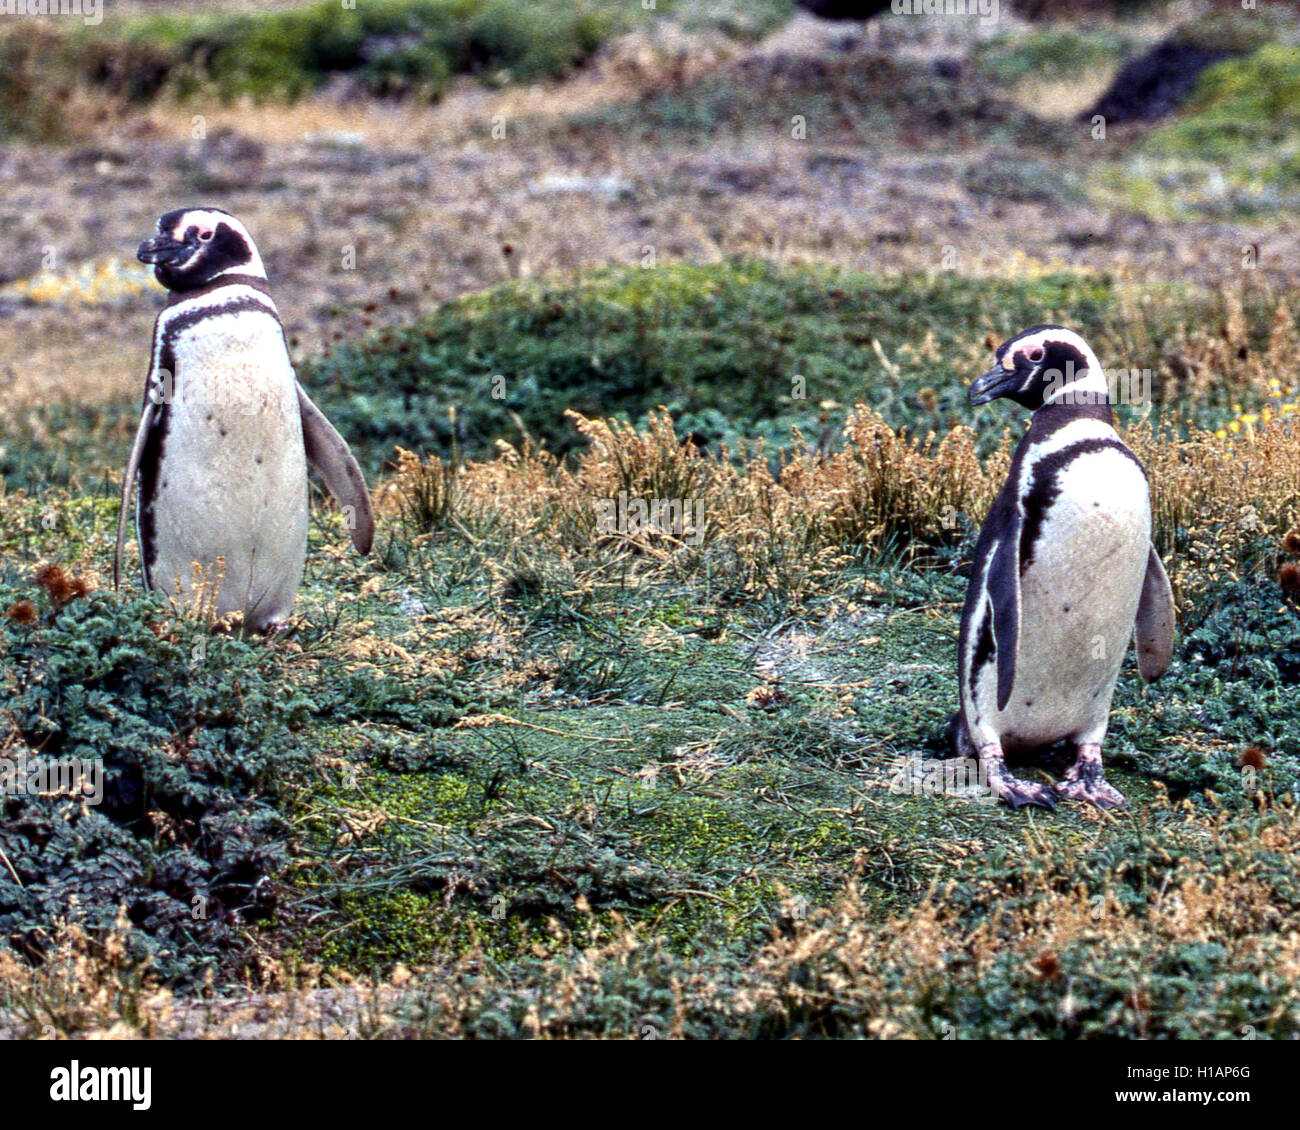 Región de Magallanes, Chile. 22 Feb, 2003. Una pareja de pingüinos de Magallanes (Spheniscus magellanicus) en la Reserva Pingüino Otway Sound en Chile, a 40 millas (65km) de la ciudad de Punta Arenas. Una popular atracción turística, los pingüinos volver allí cada año para la época de apareamiento. Fueron nombradas después de explorador portugués Fernando de Magallanes, quien descubrió a los pájaros en 1520. © Arnold Drapkin/Zuma alambre/Alamy Live News Foto de stock